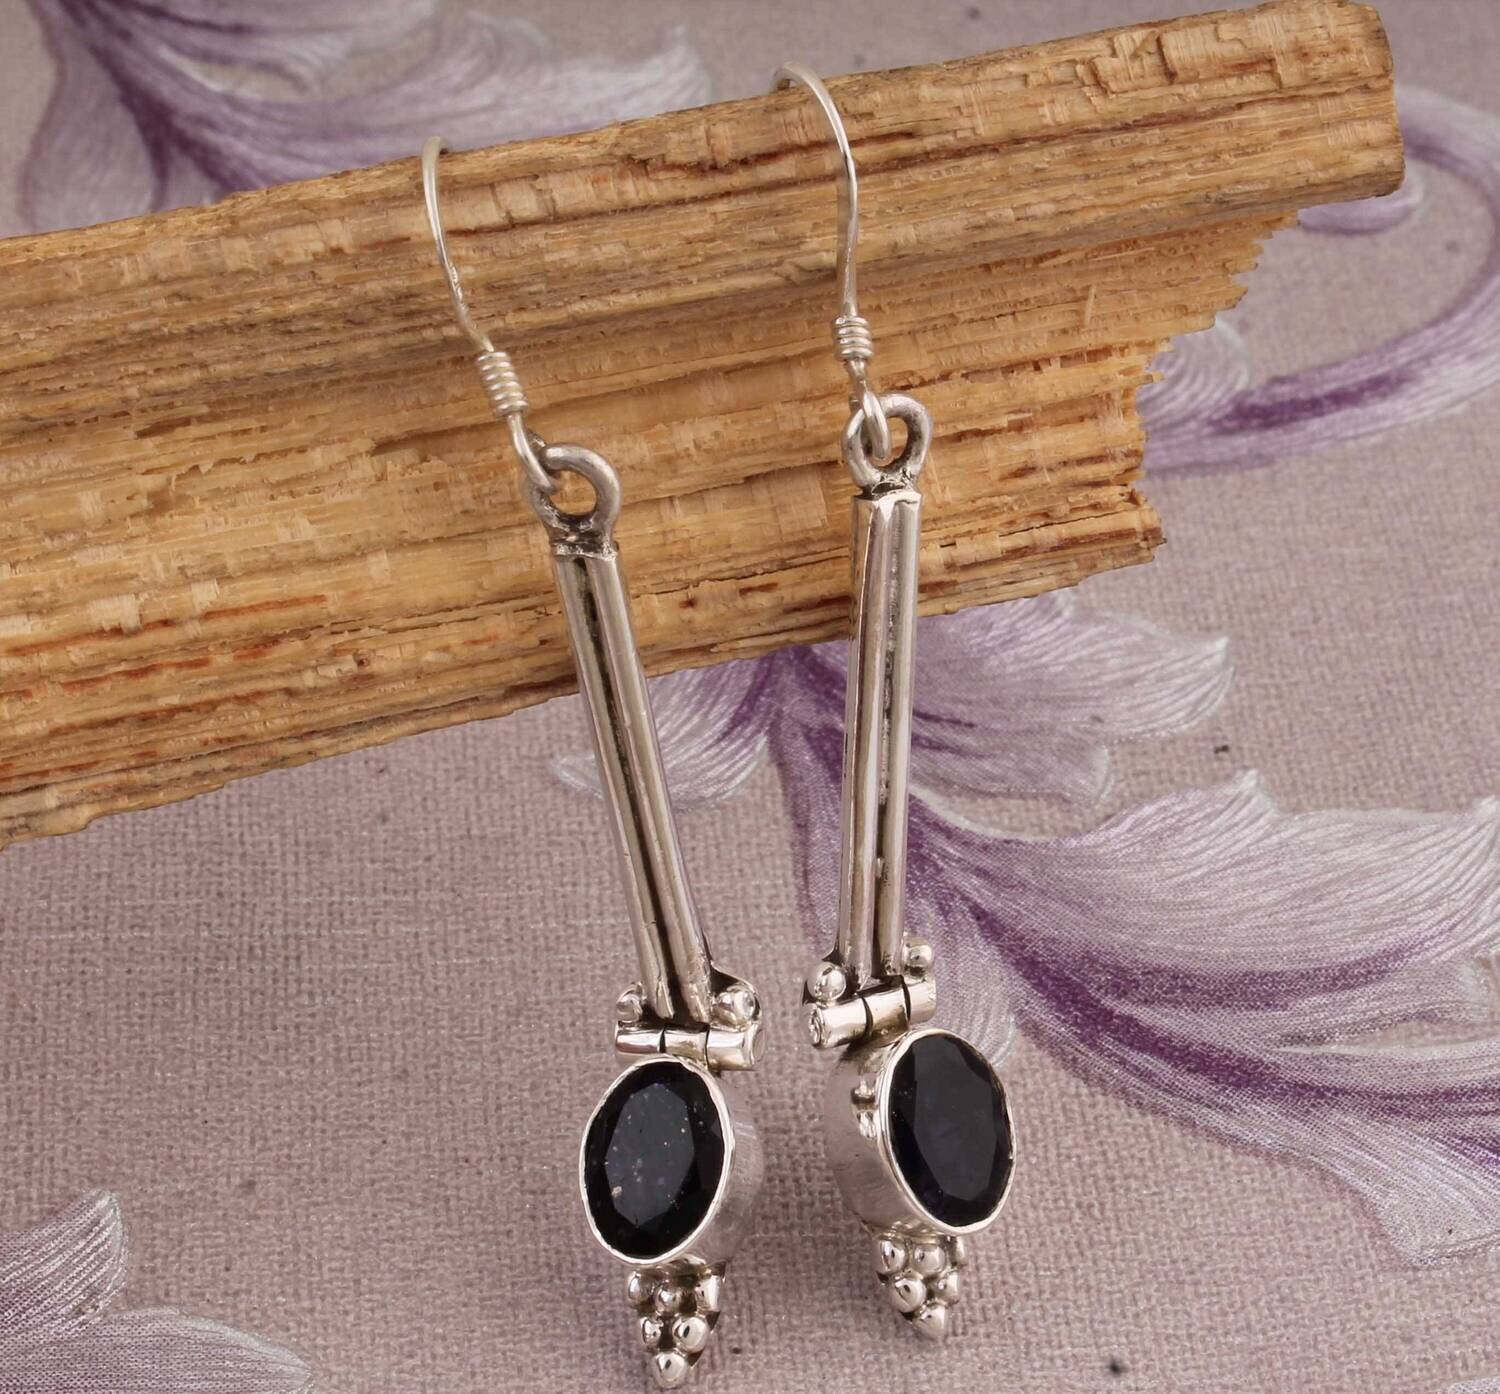 Natural Iolite Oval Shape Gemstone Silver Earrings, 925 Sterling Silver Earrings, Designer Handmade Iolite Earrings, Women Jewelry Gift Idea